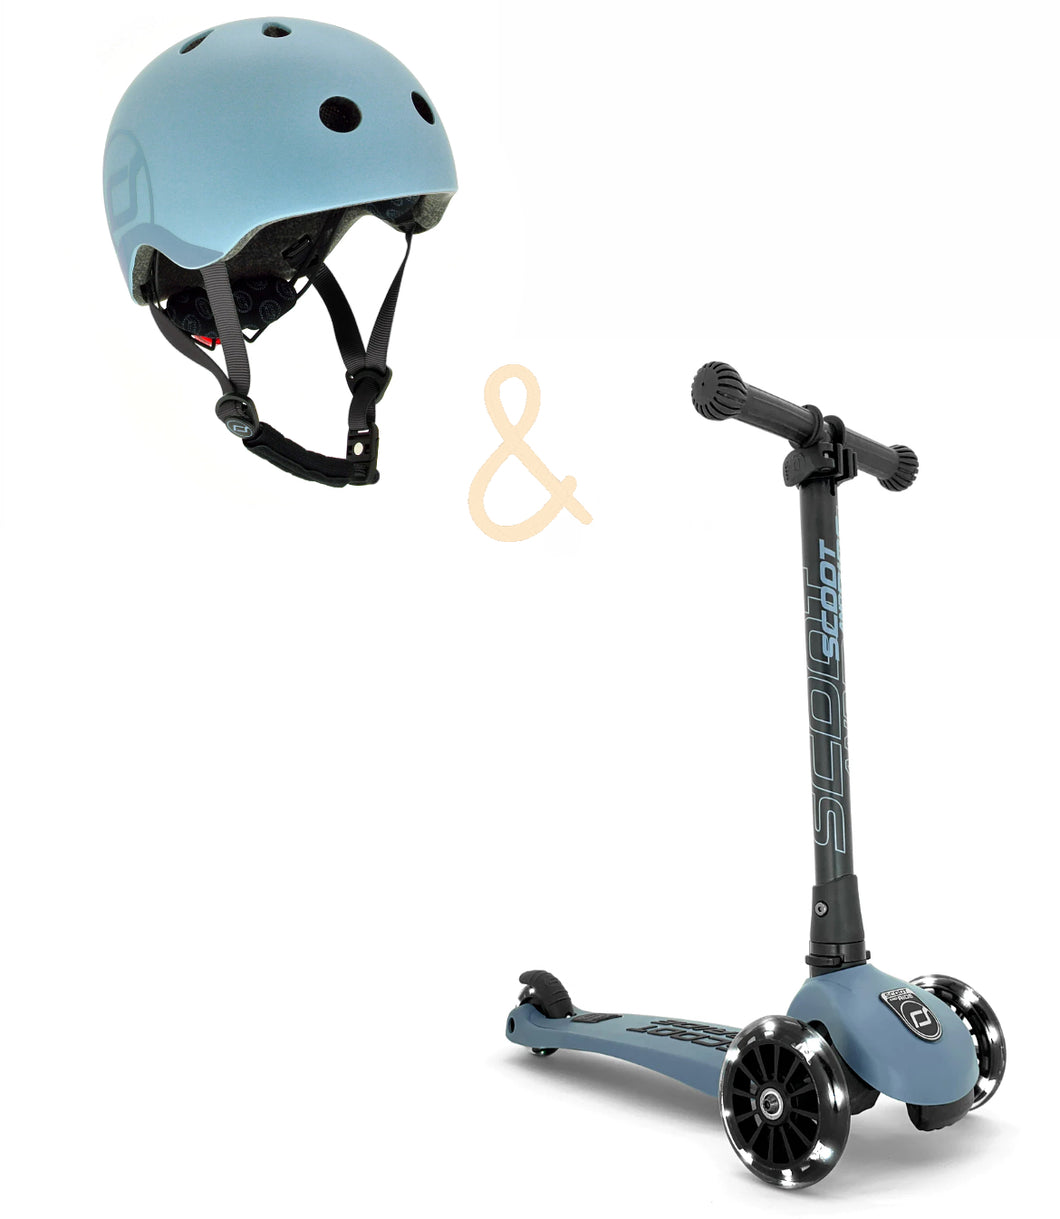 Bundle - highwaykick 3 LED + helmet by Scoot & ride